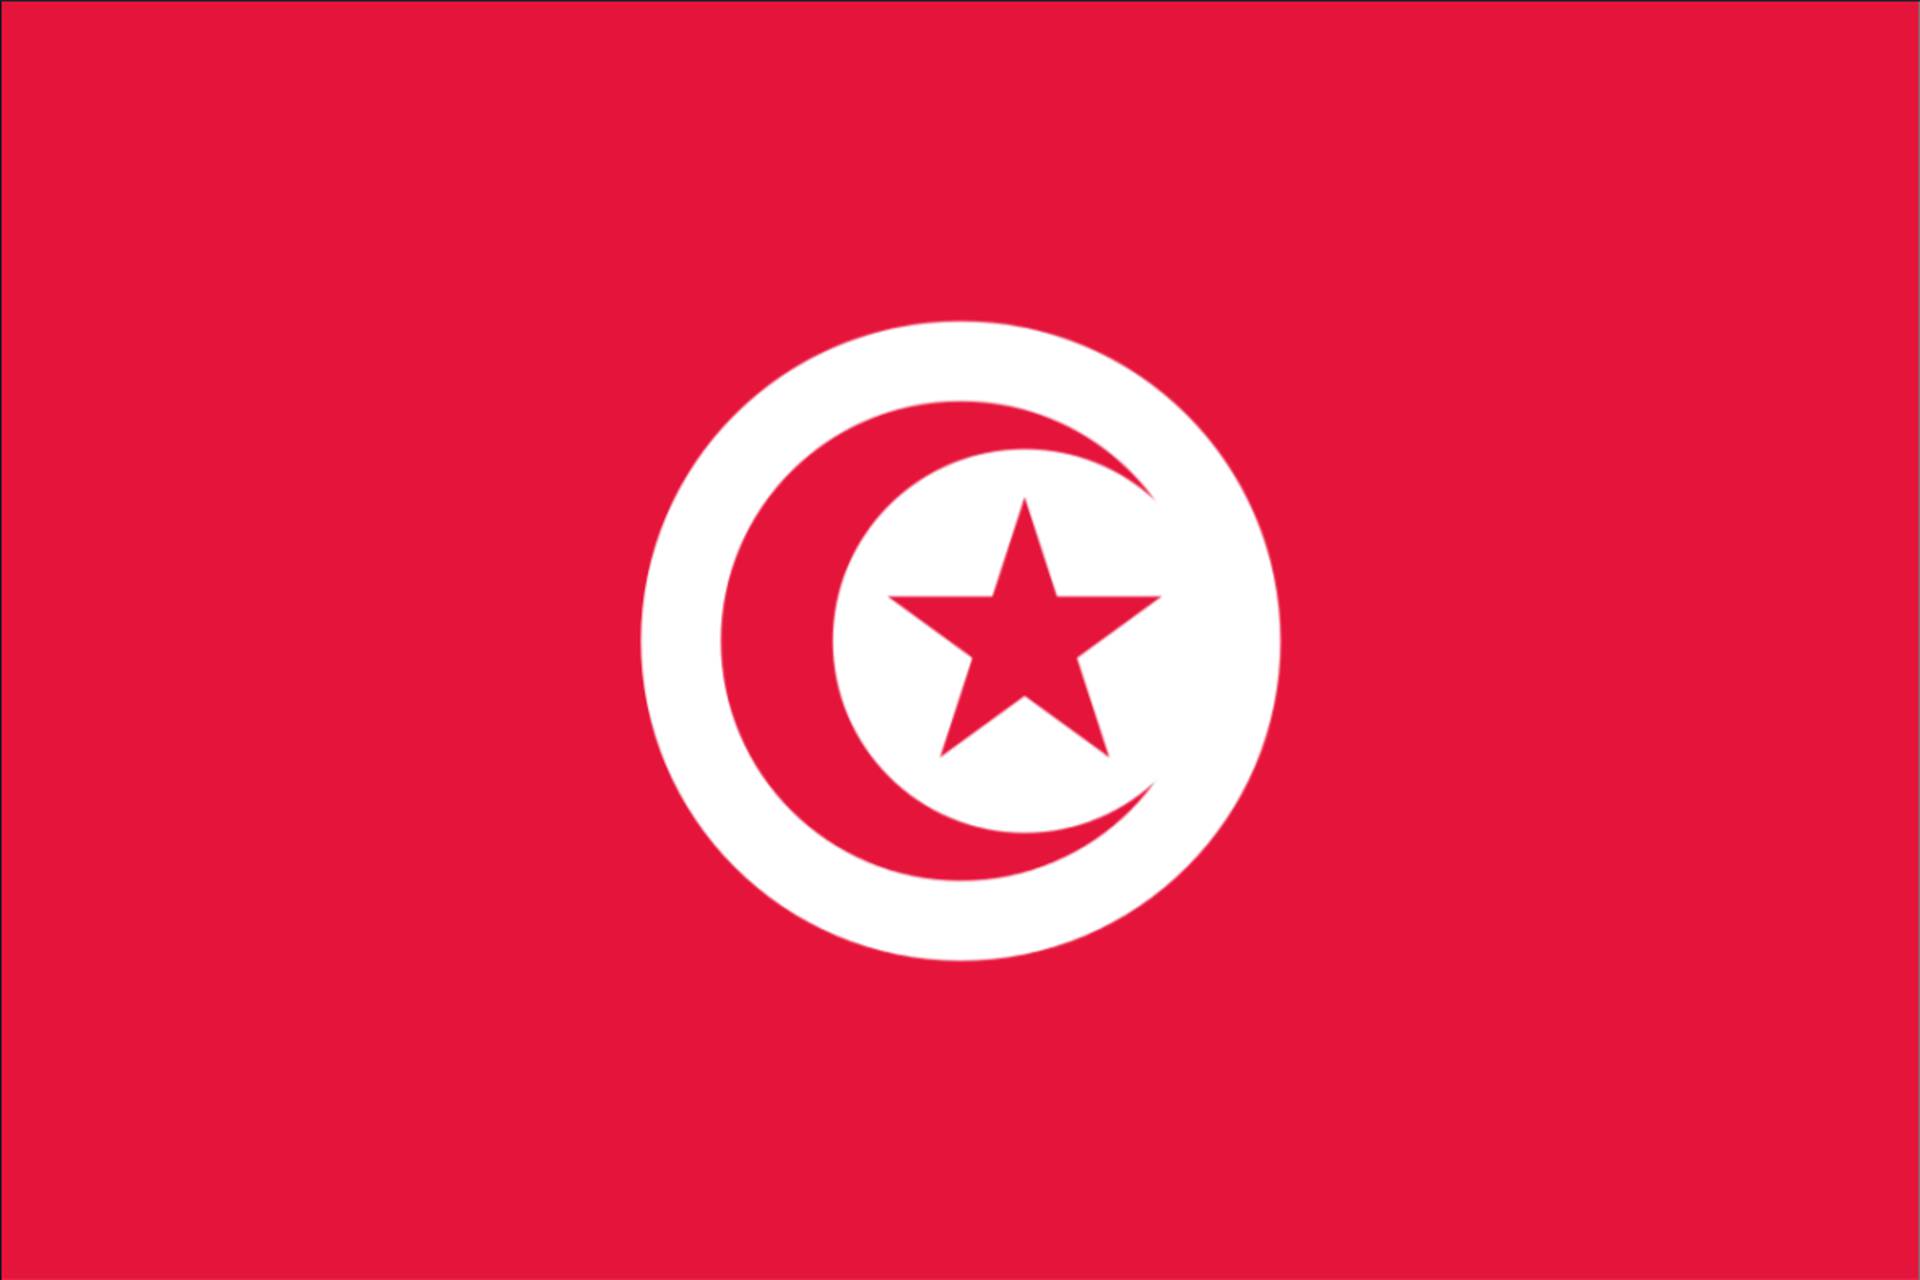 Flagge Tunesien Flag Tunisia iron-on Aufnäher patch 